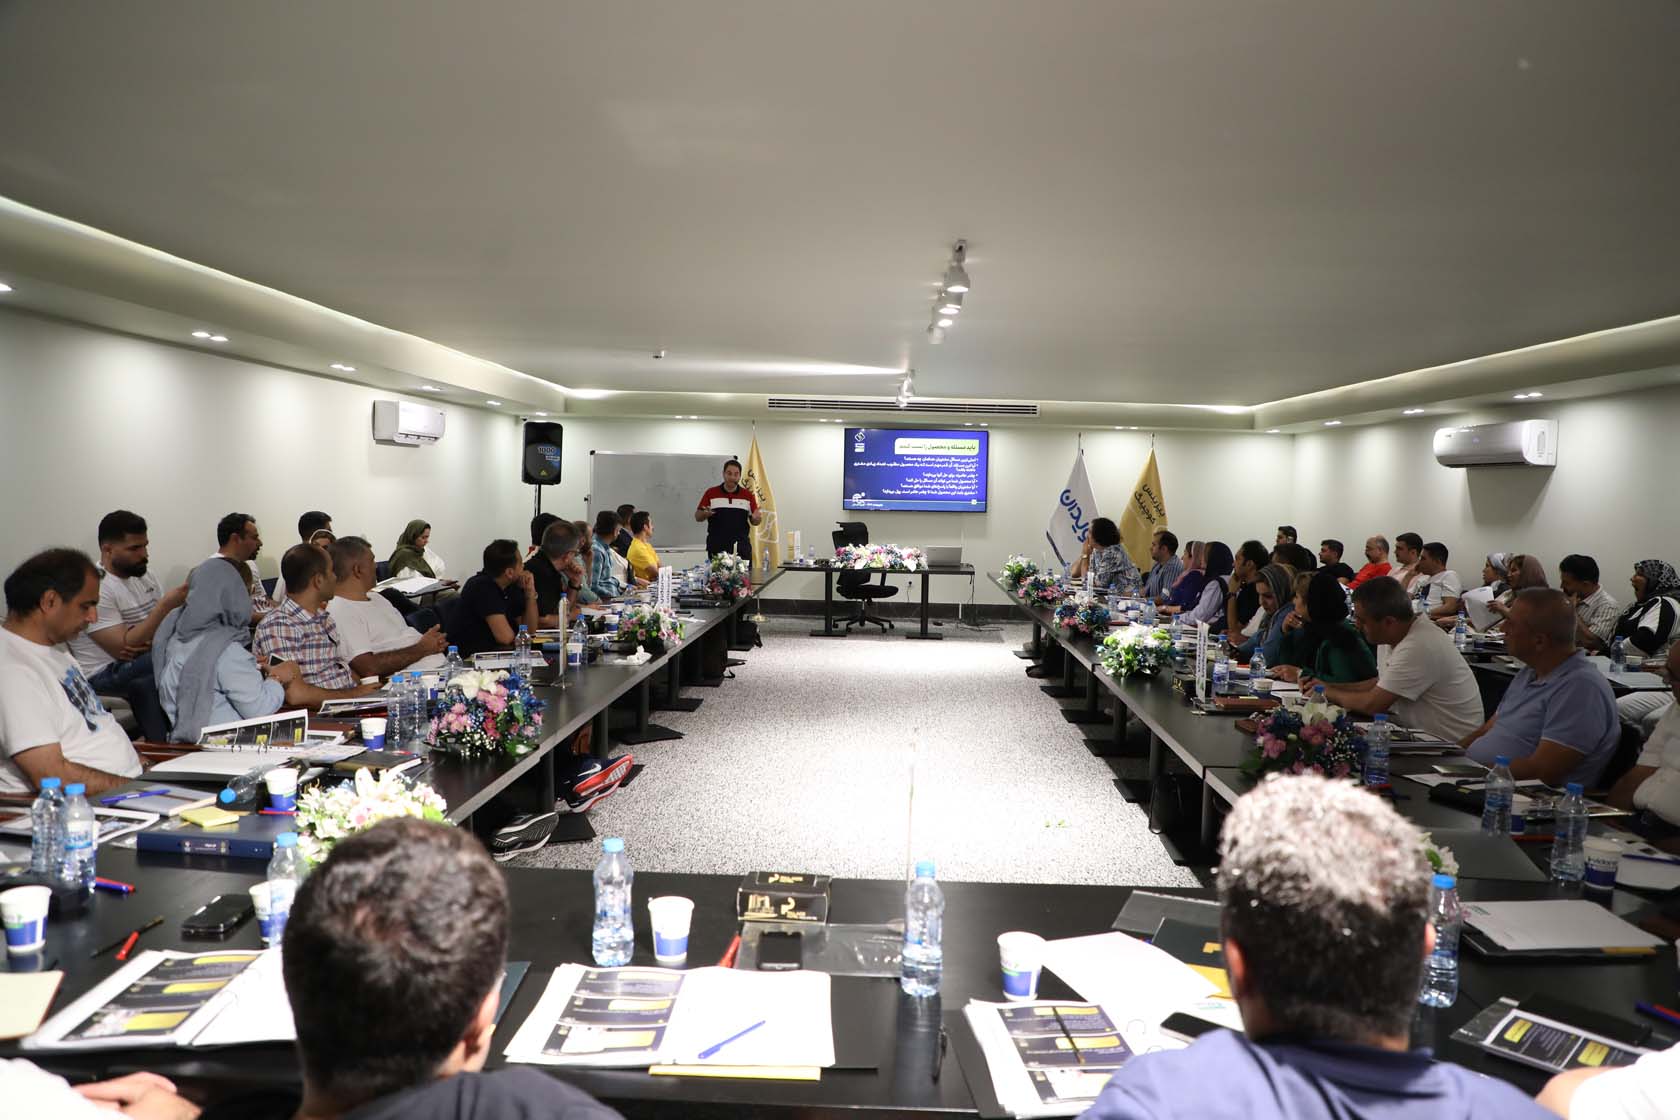 دومین، سومین و چهارمین جلسه بیزنس کوچینگ با تدریس دکتر ربانی و حضور کارآفرینان و صاحبان کسب و کار در جزیره کیش برگزار شد